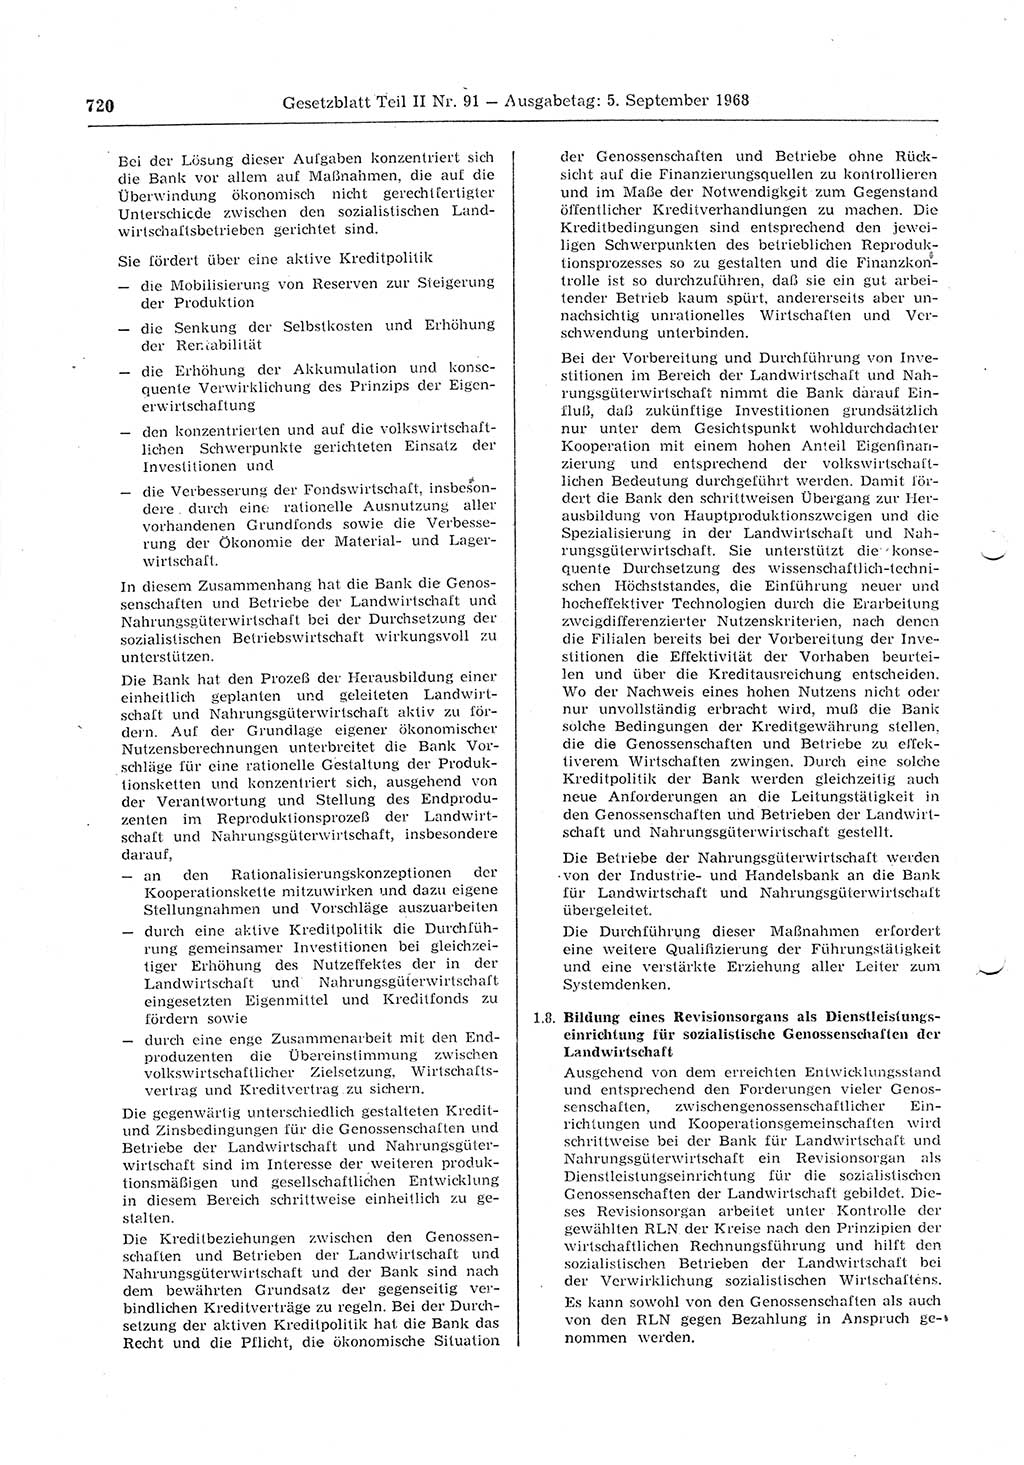 Gesetzblatt (GBl.) der Deutschen Demokratischen Republik (DDR) Teil ⅠⅠ 1968, Seite 720 (GBl. DDR ⅠⅠ 1968, S. 720)